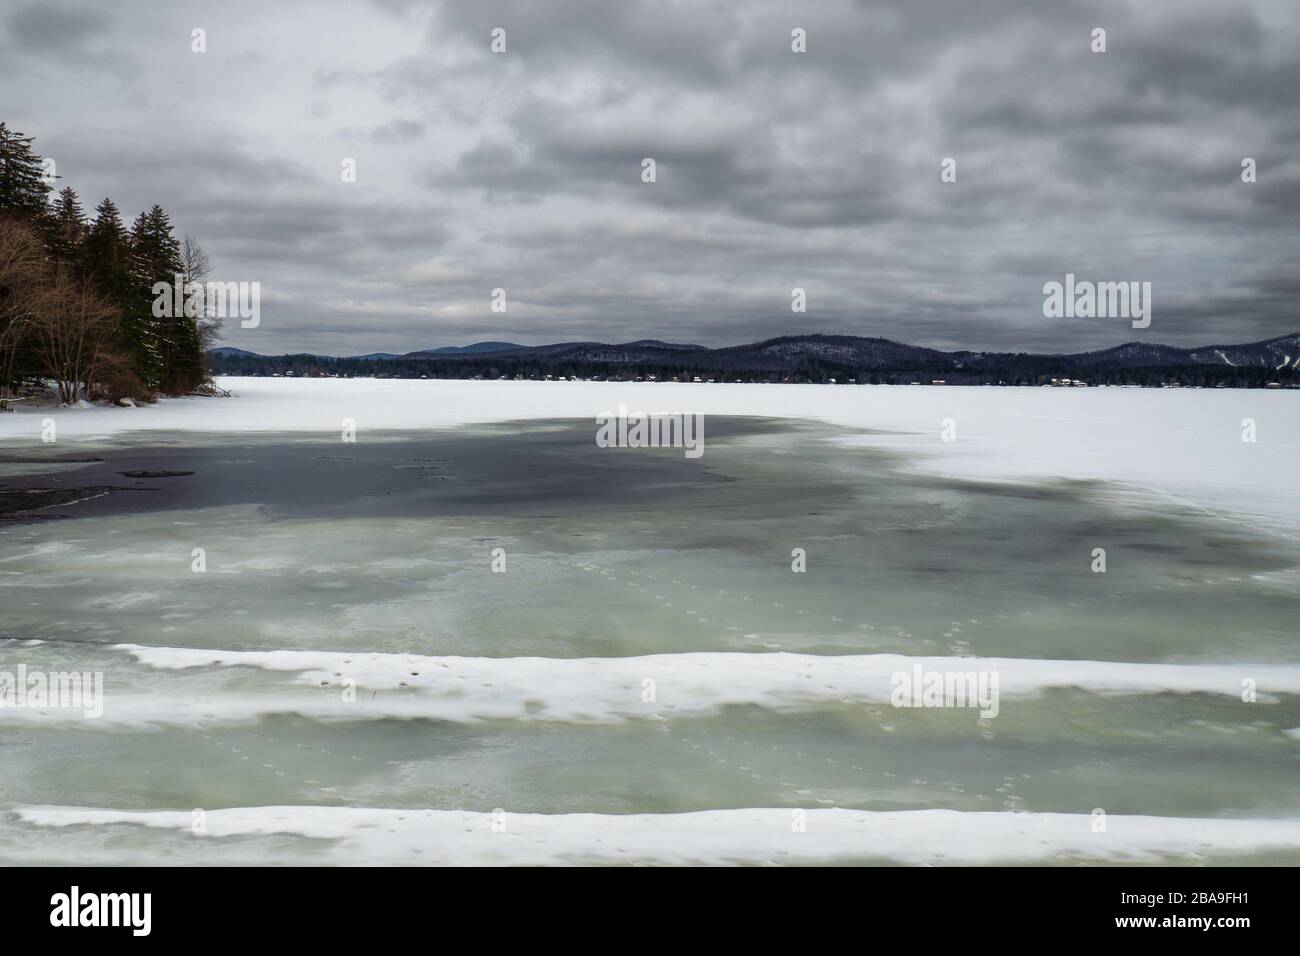 Tranquilo paisaje de montaña y lago congelado en las Montañas Adirondack del upstate Nueva York Foto de stock